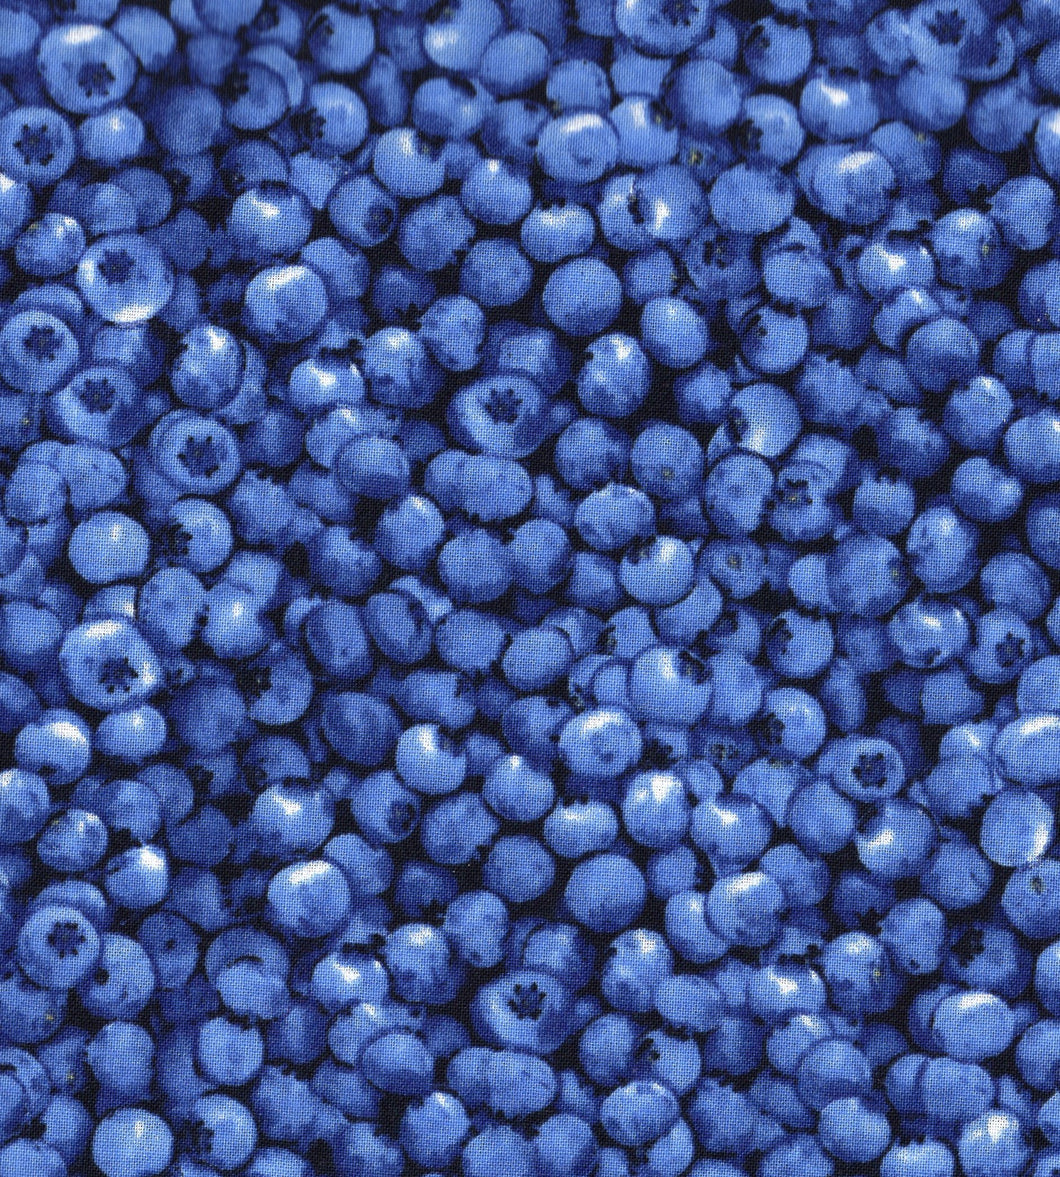 Blueberries ed581